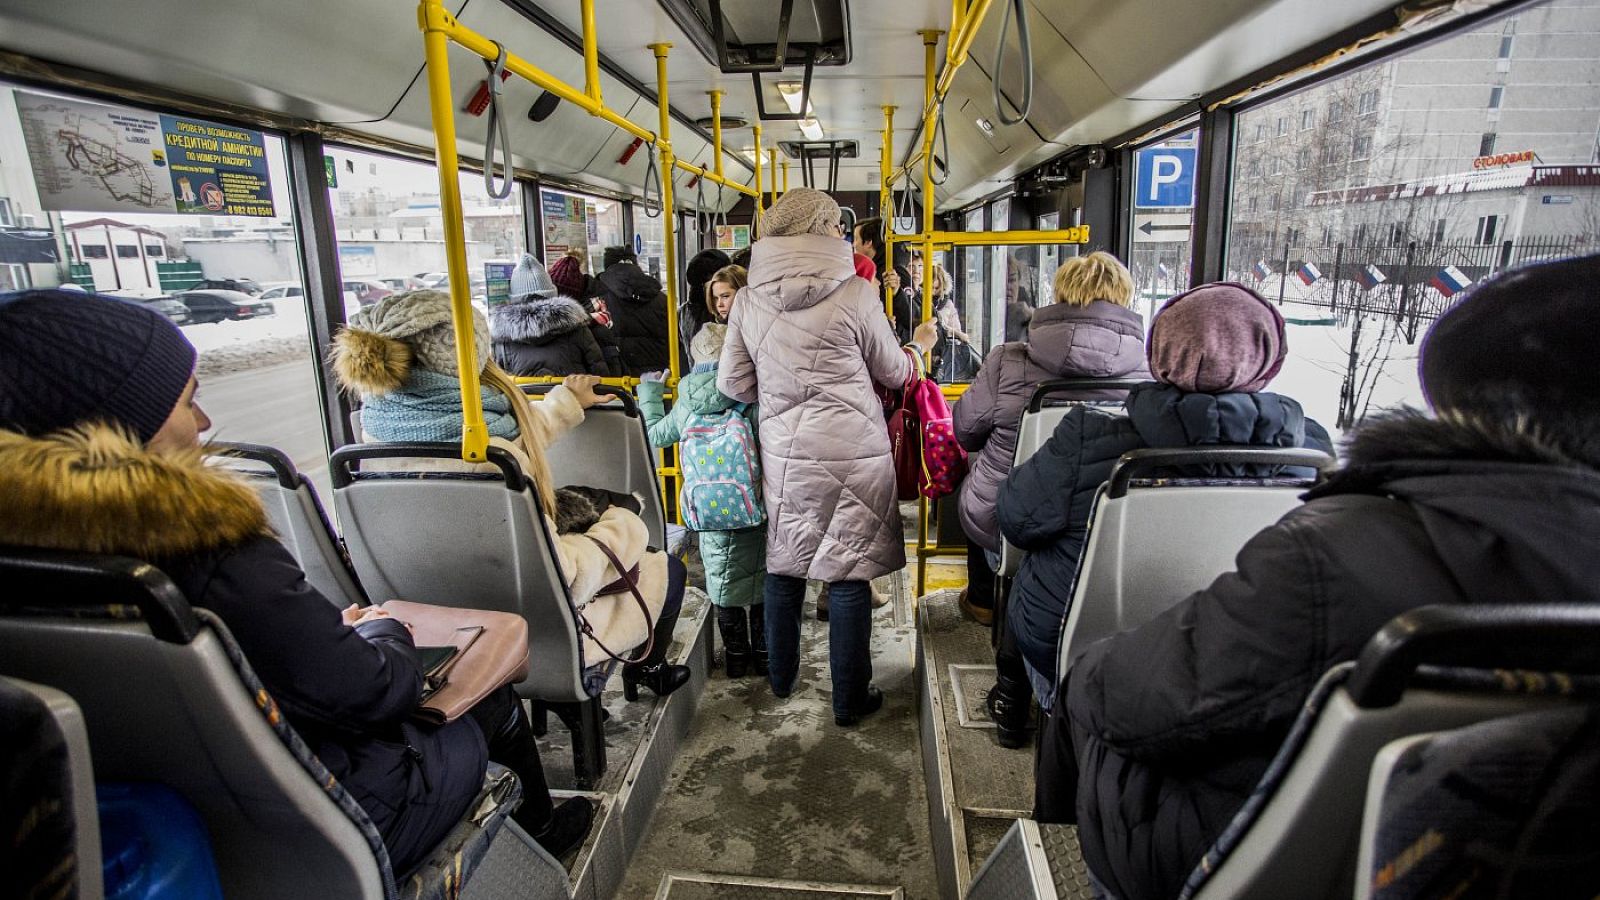 Социальный проезд в общественном транспорте. Пассажиры в транспорте. Общественный транспорт внутри. Автобус внутри с людьми. Пассажиры общественного транспорта.